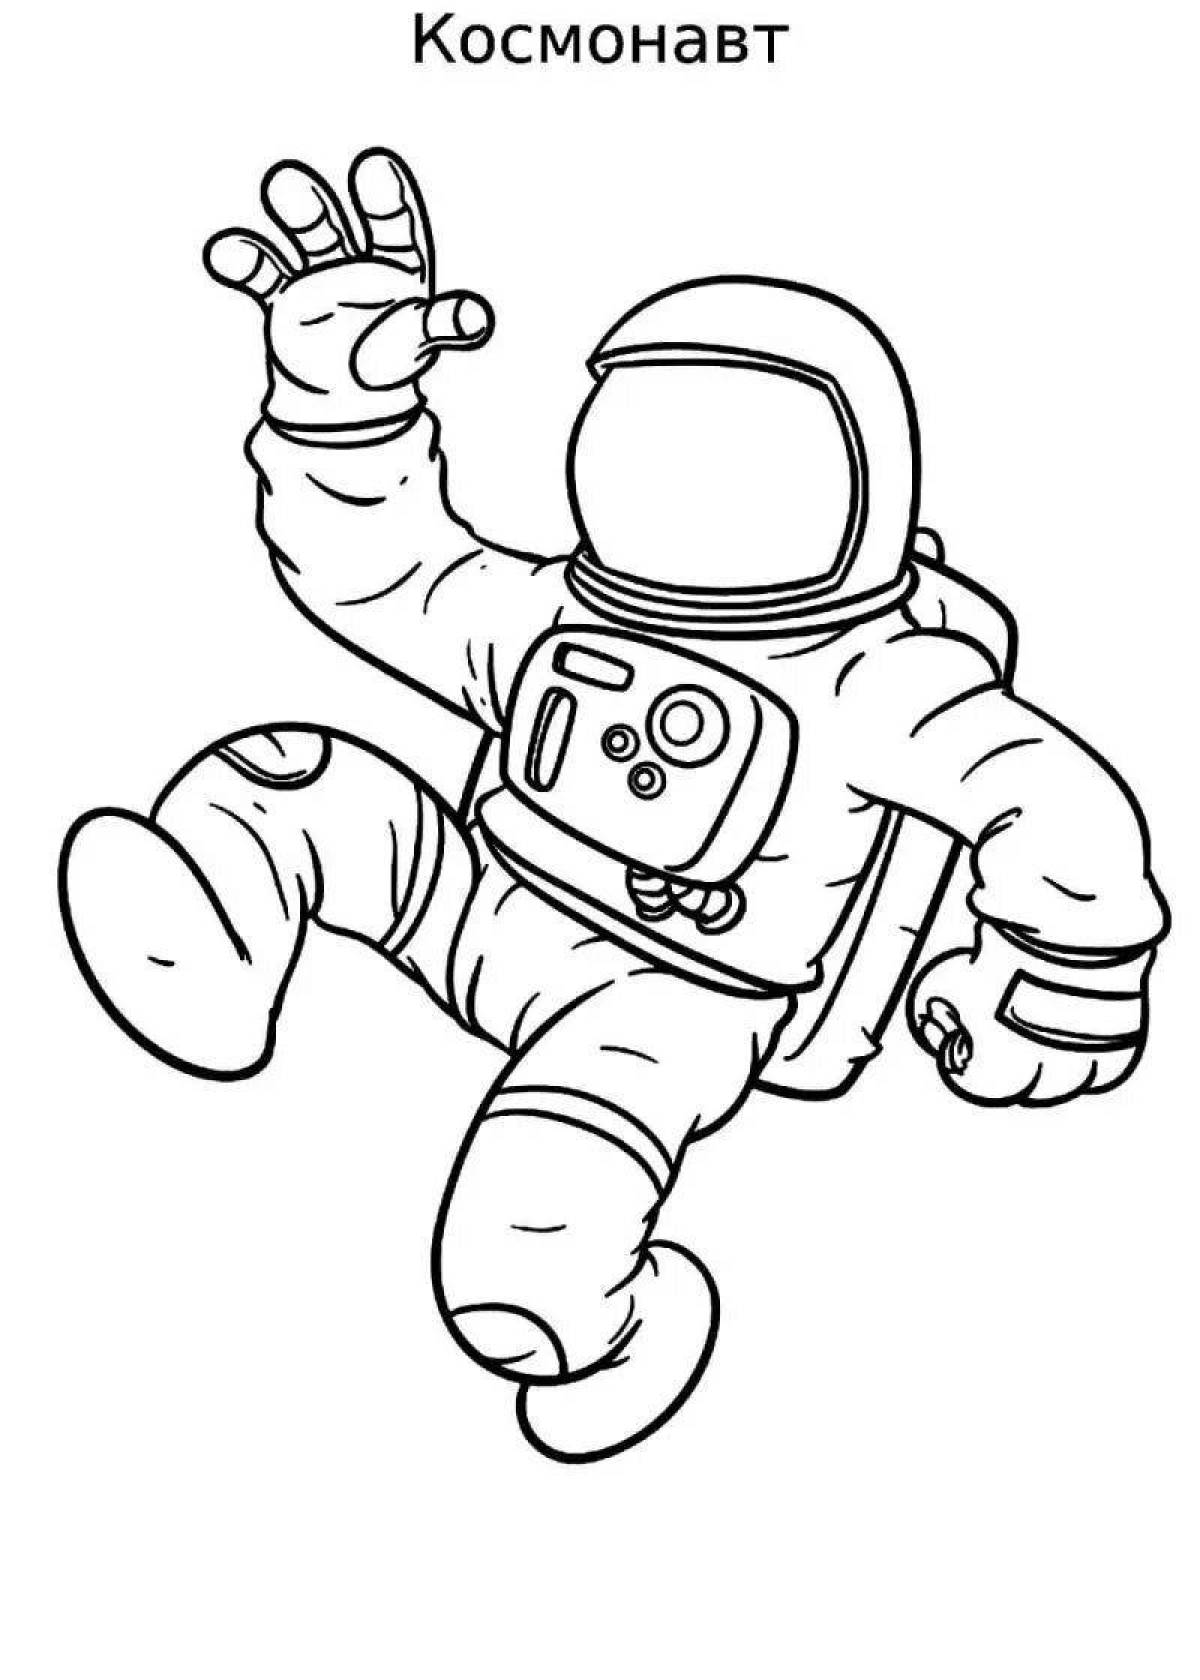 Легкий рисунок космонавта. Раскраска космонавт в скафандре. Раскраска Космонавта в скафандре для детей. Космонавт раскраска для детей. Космонавт рисунок для детей.